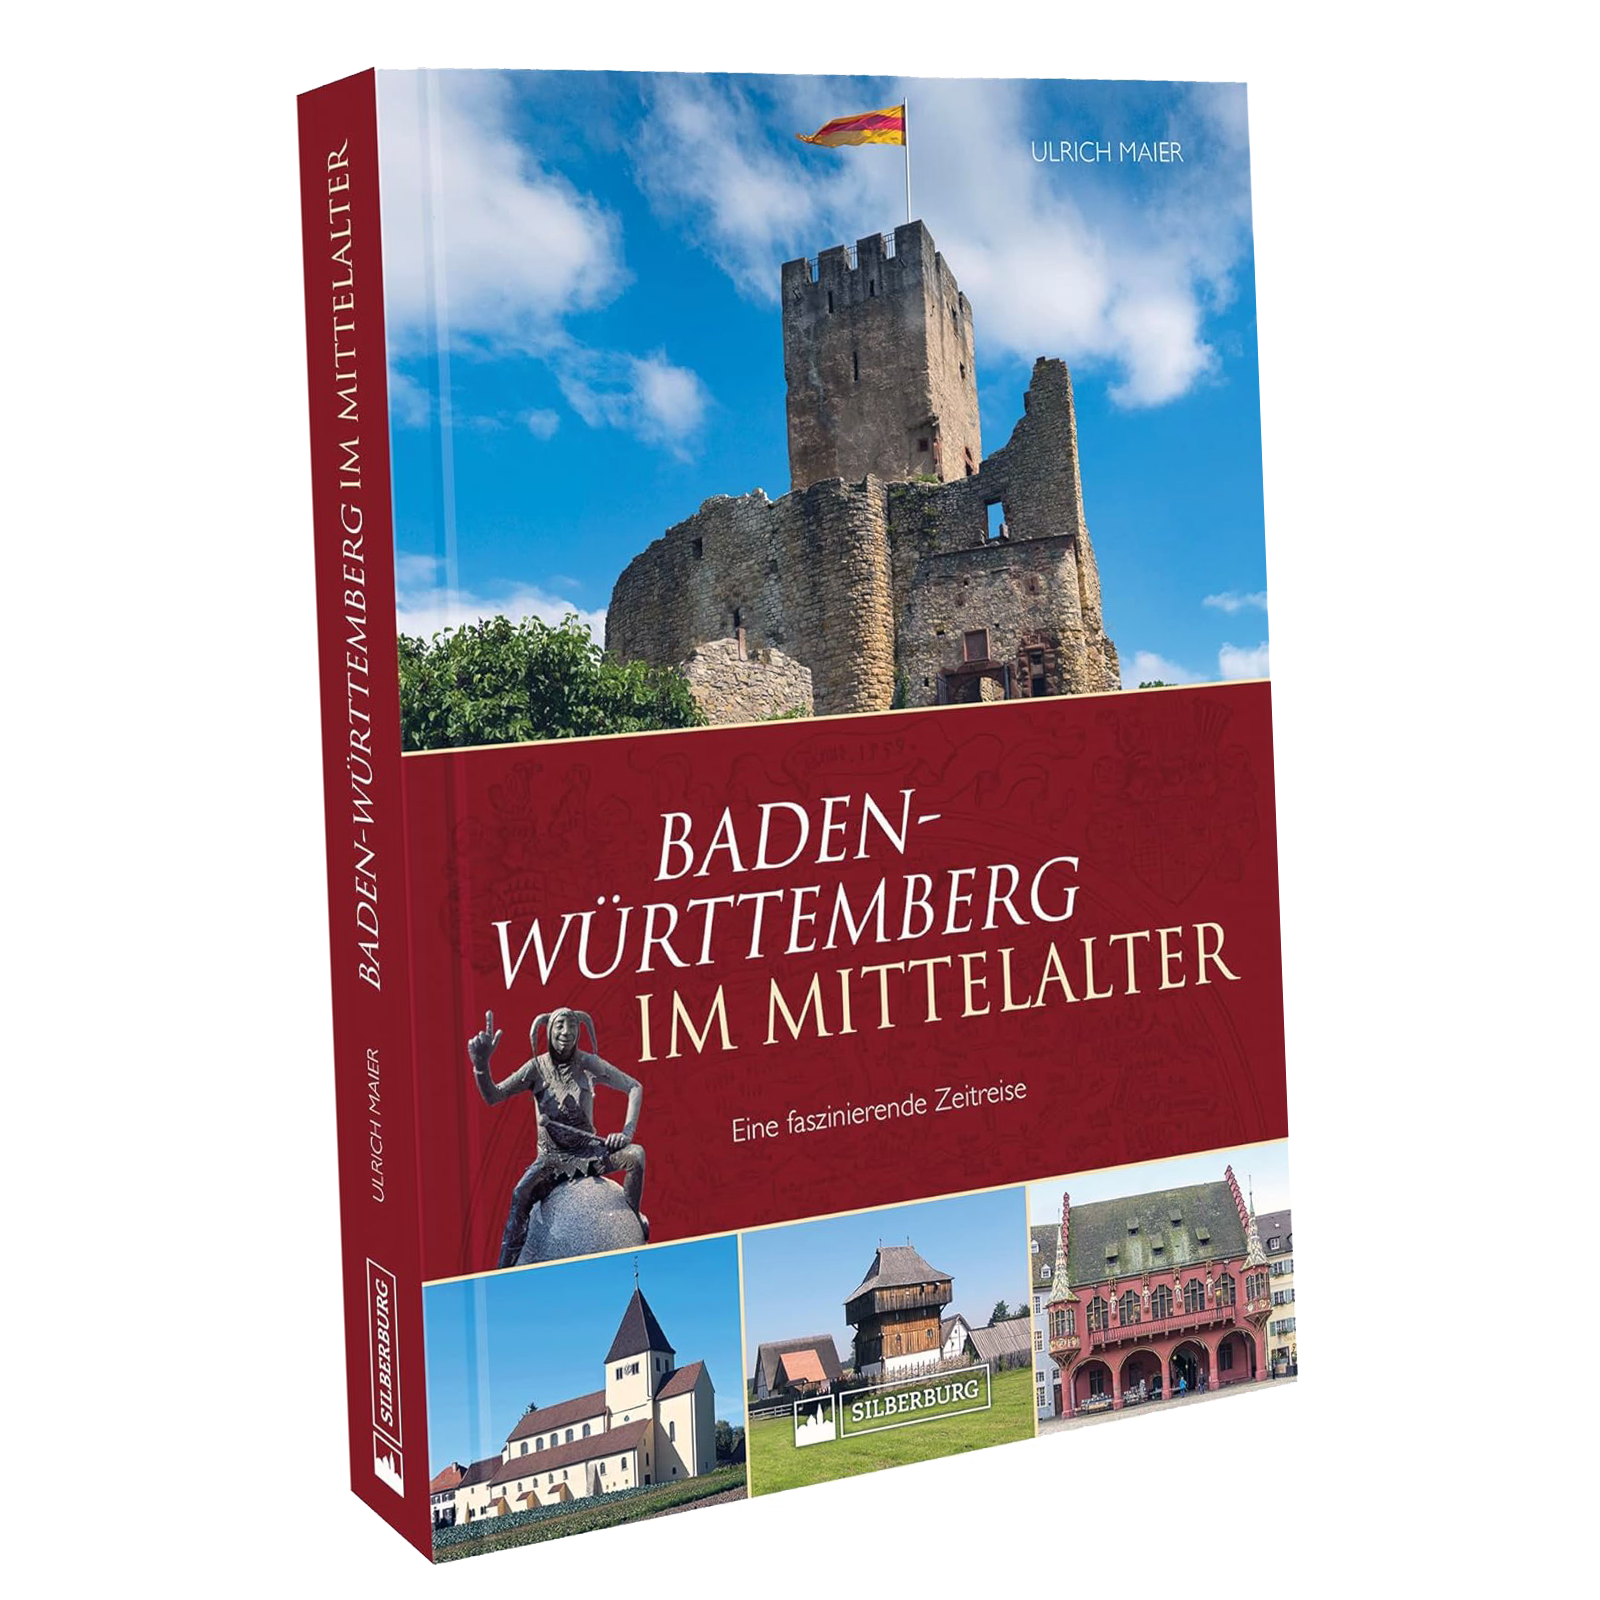 Baden-Württemberg im Mittelalter, von Maier, Ulrich